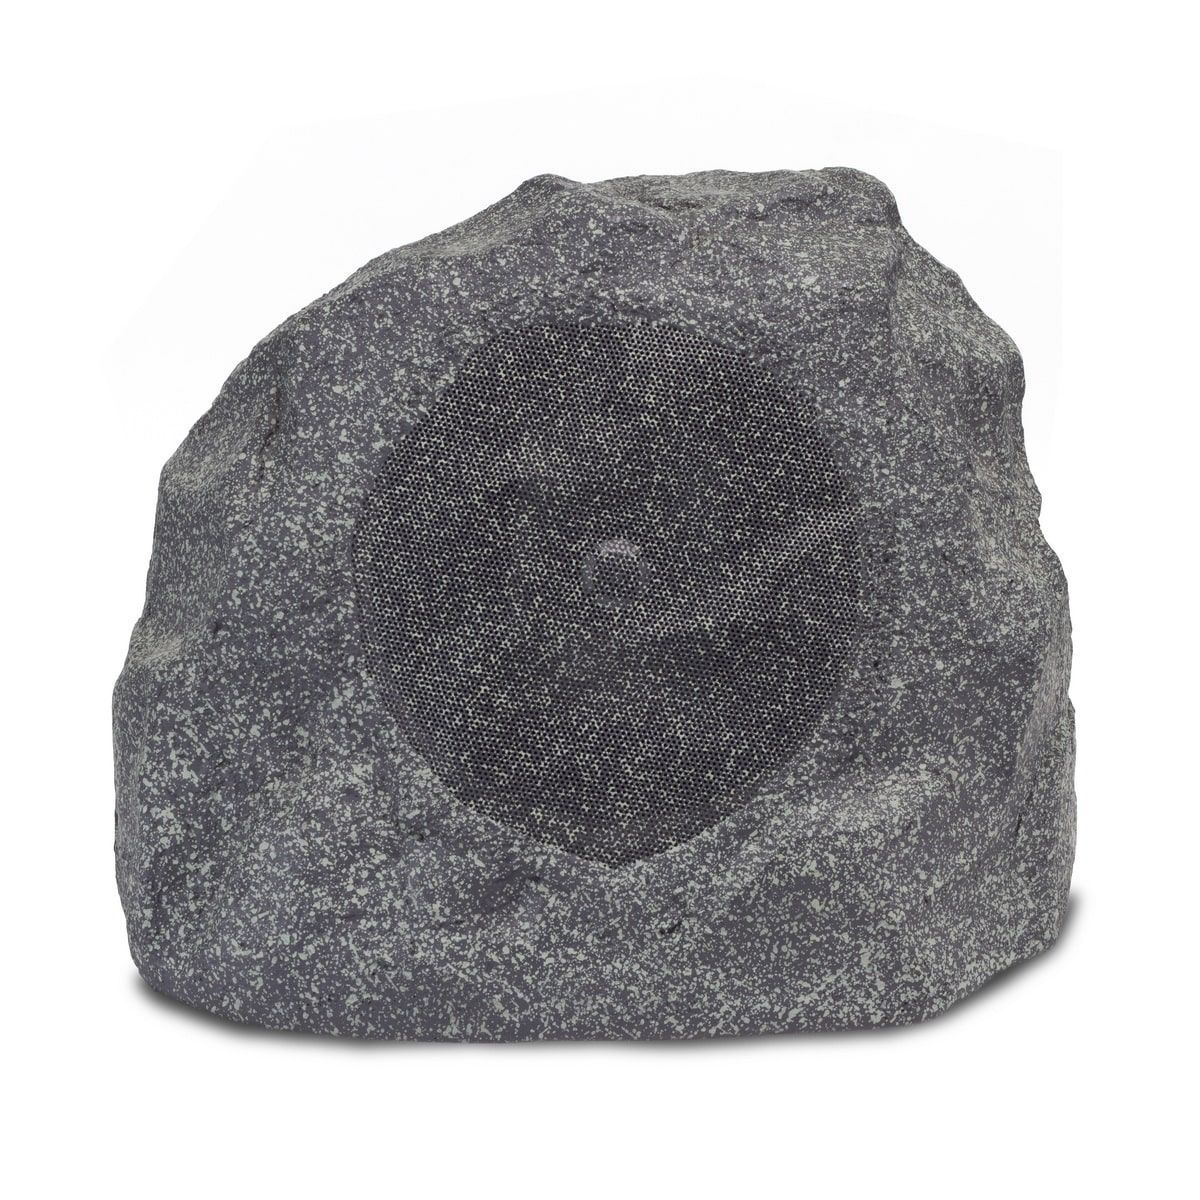 Картинка Всепогодная АС Klipsch PRO-650T-RK Granite - лучшая цена, доставка по России